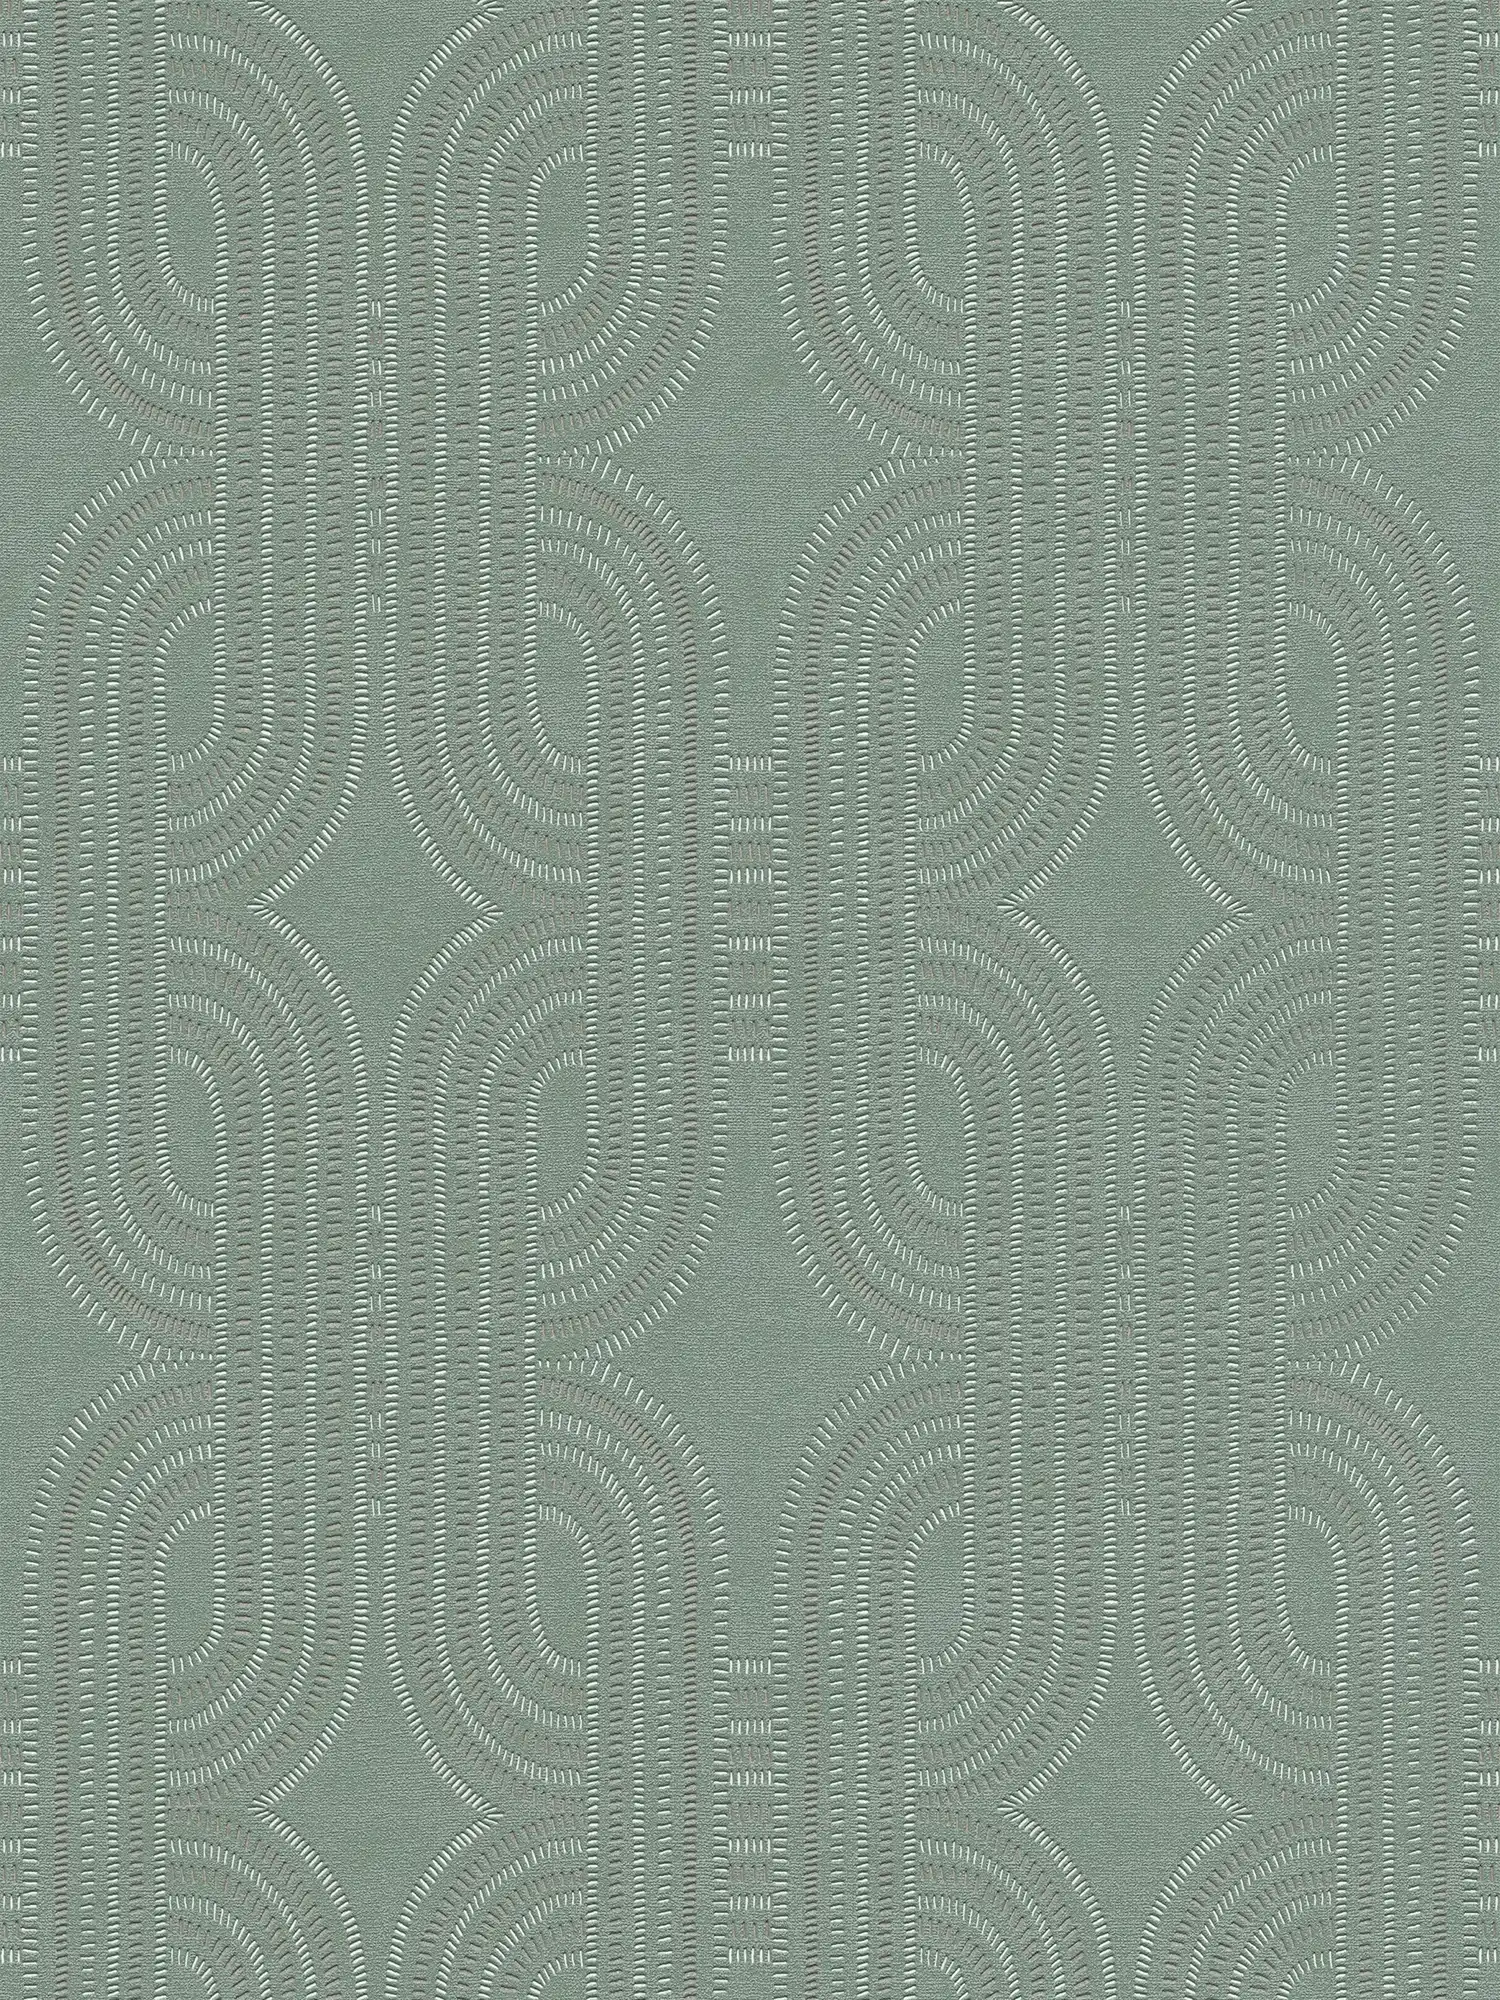         Retro Vliestapete mit grafischem Muster – Blau, Grün, Braun
    